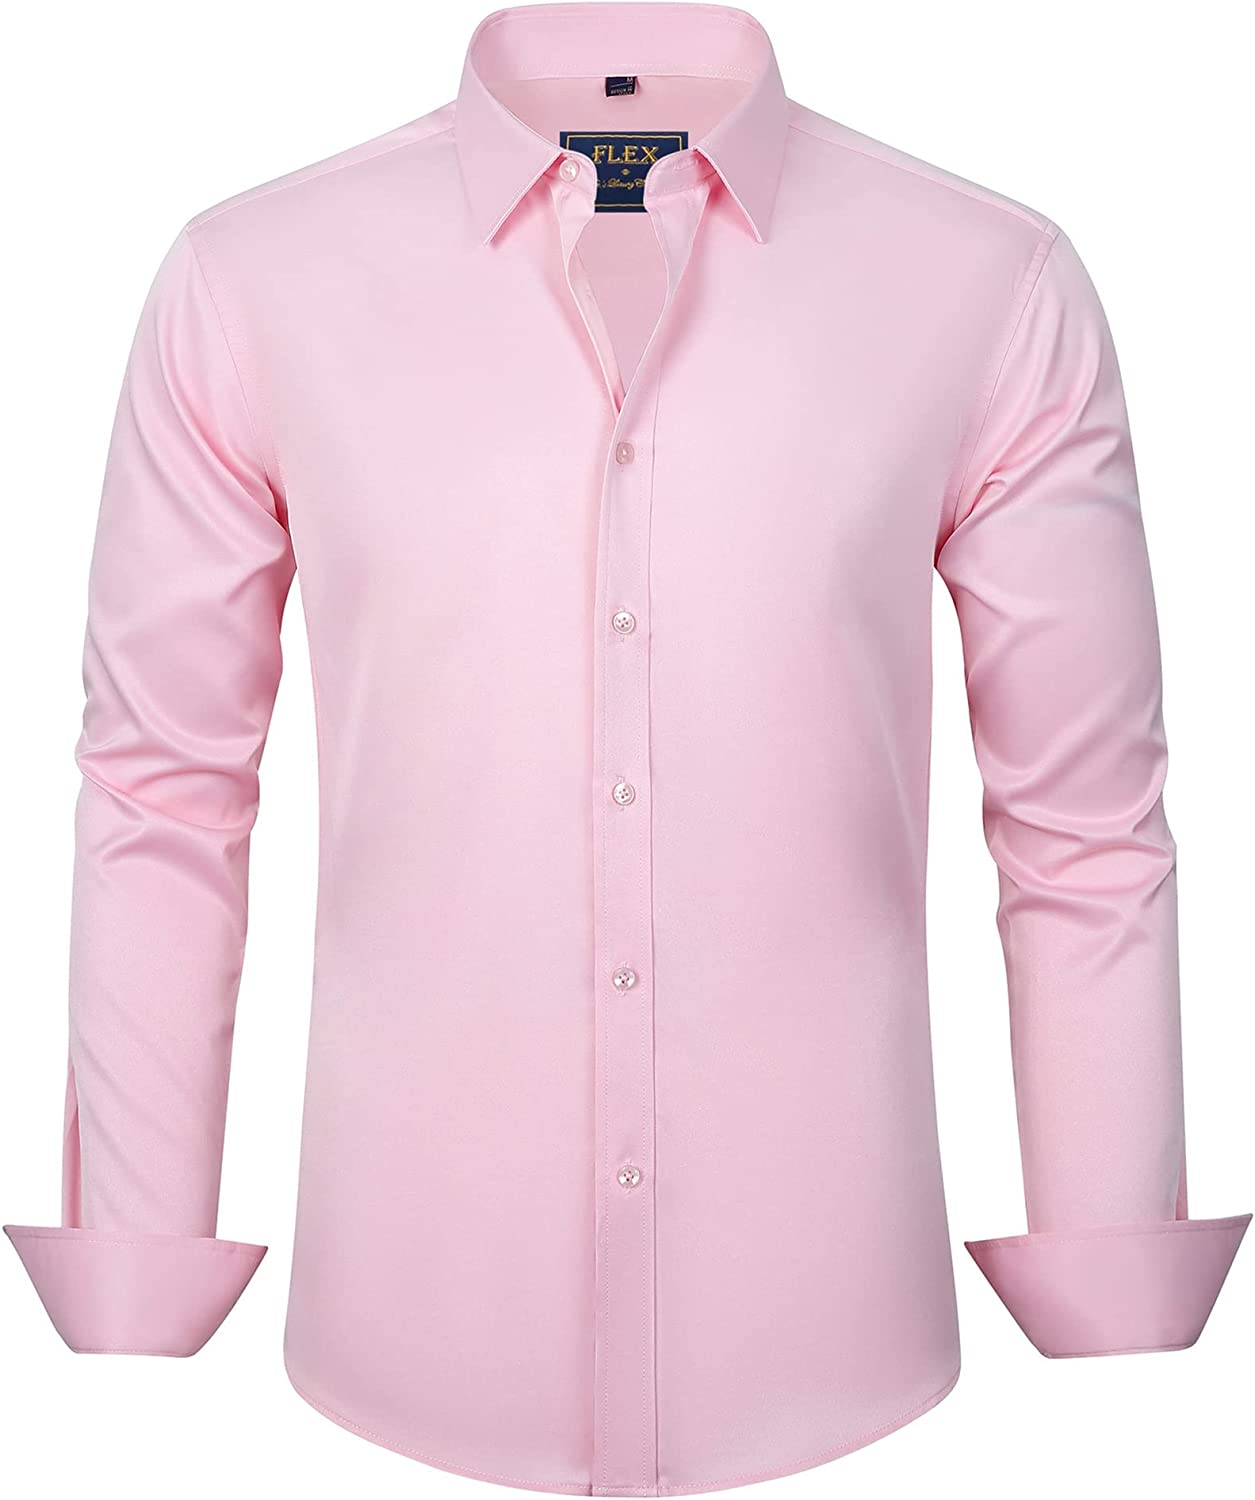  J.VER Men's Long Sleeve Linen Button Down Shirts